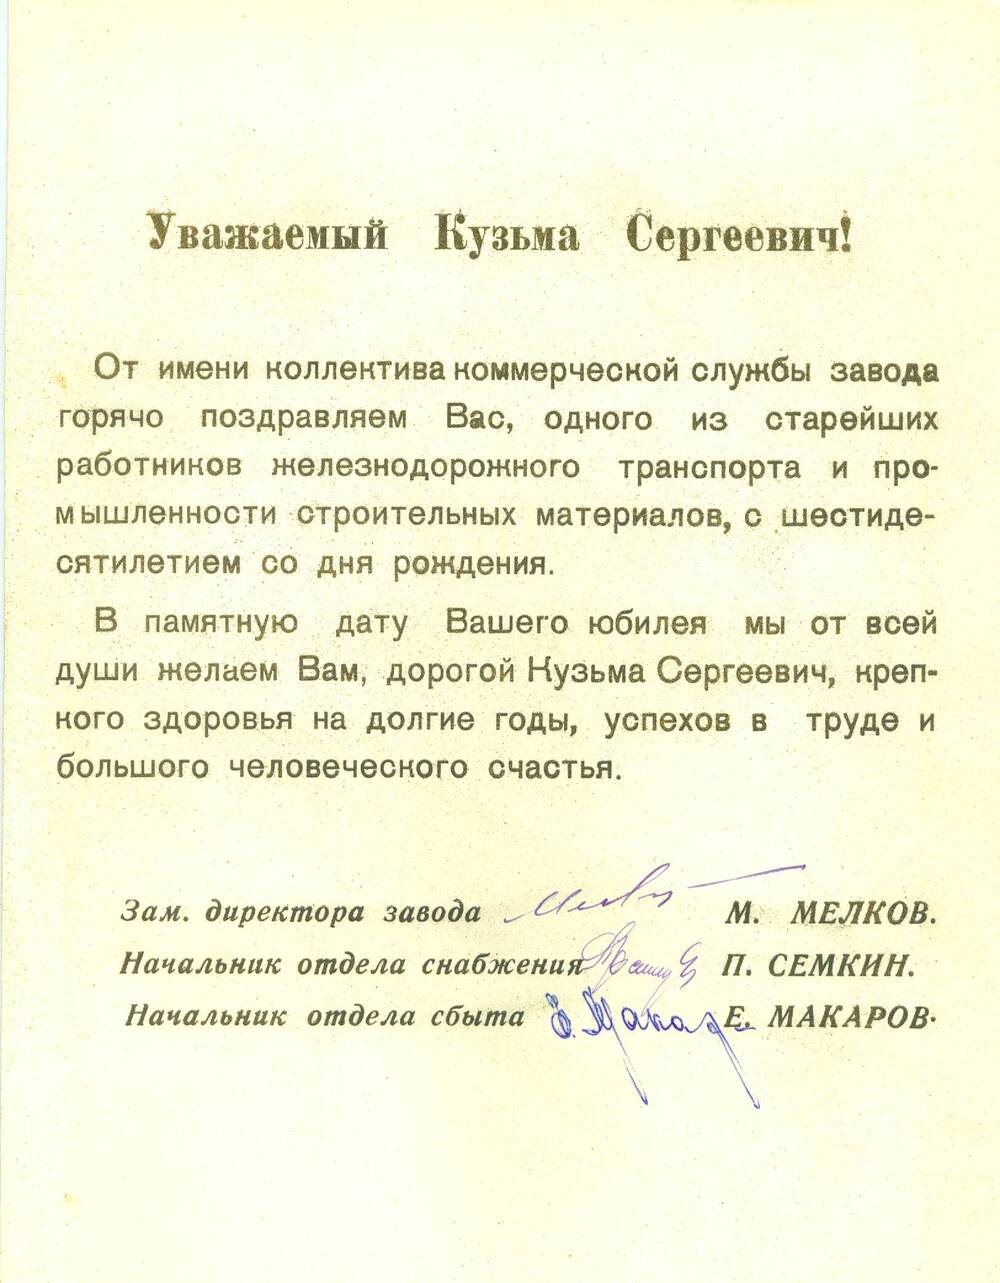 Приветственный адрес Бушуеву К. С. от ЧЛЗ в связи с 60-летием со дня рождения